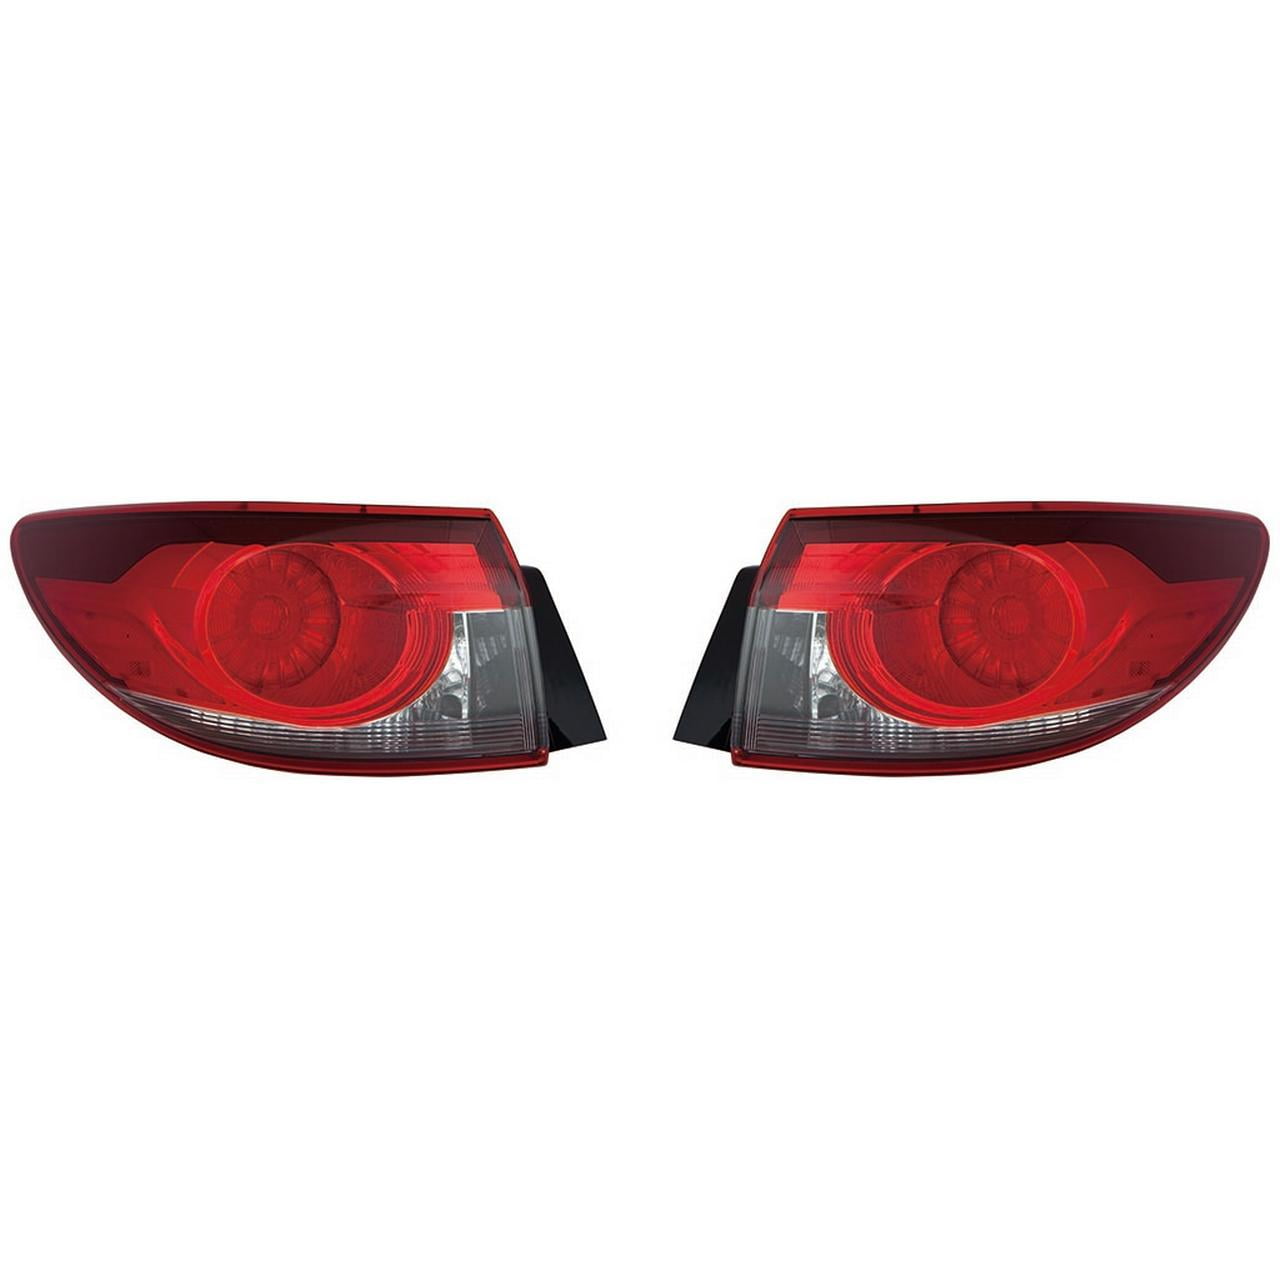 For Mazda 6 Sedan 20142015 Tail Light Assembly Pair